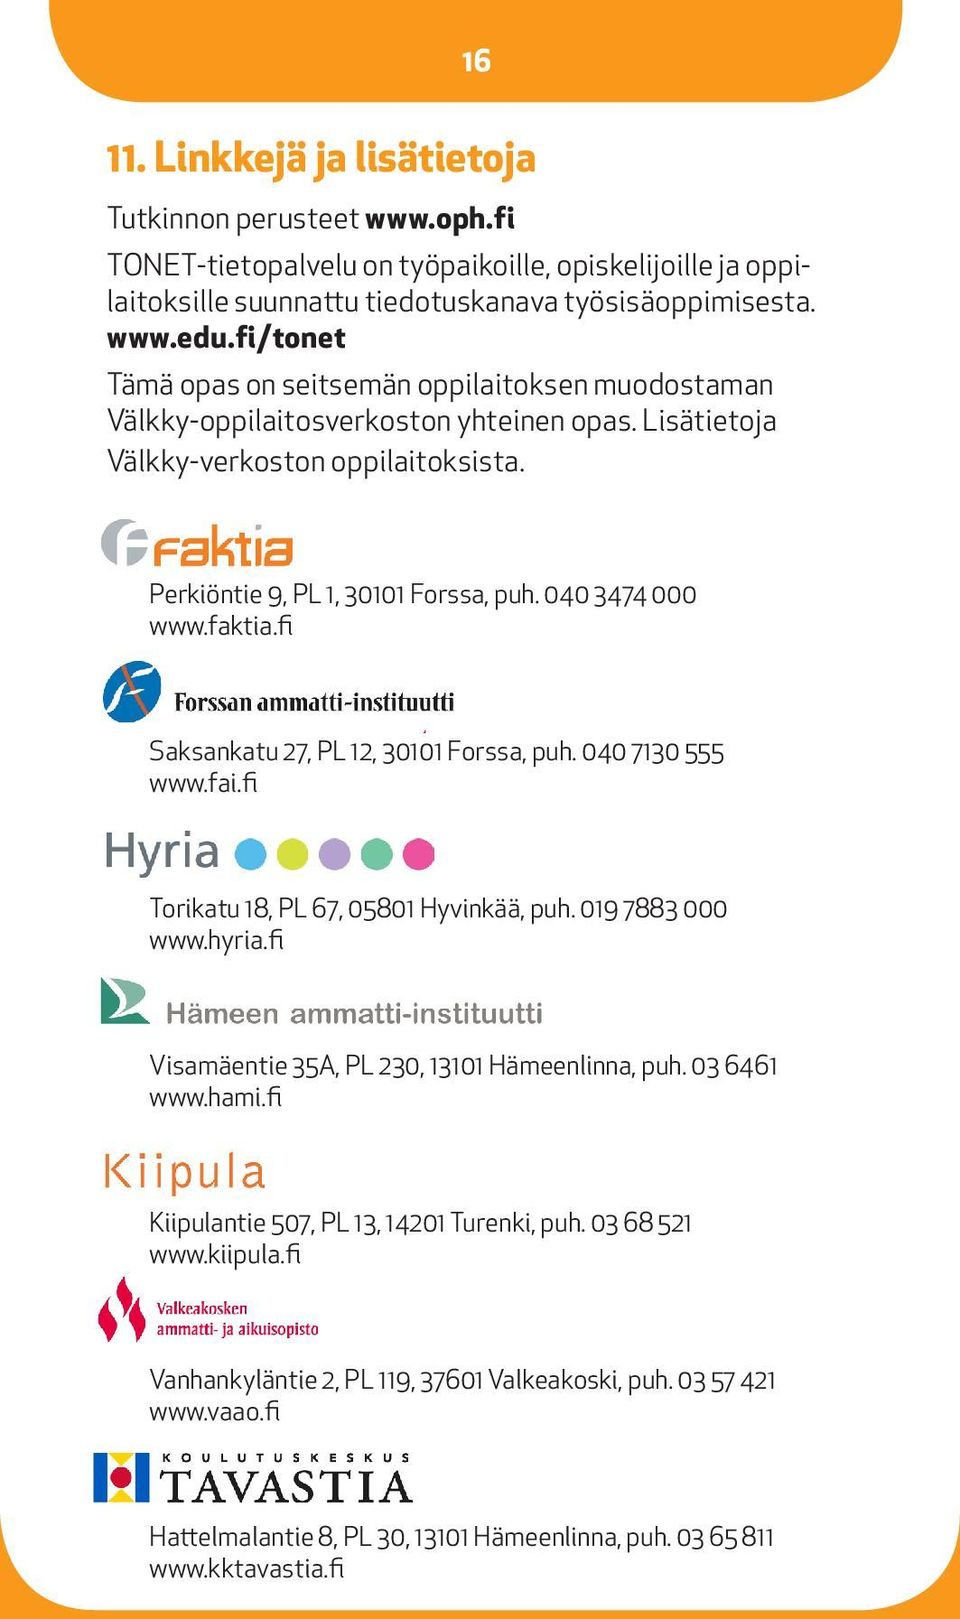 040 3474 000 www.faktia.fi Saksankatu 27, PL 12, 30101 Forssa, puh. 040 7130 555 www.fai.fi Torikatu 18, PL 67, 05801 Hyvinkää, puh. 019 7883 000 www.hyria.